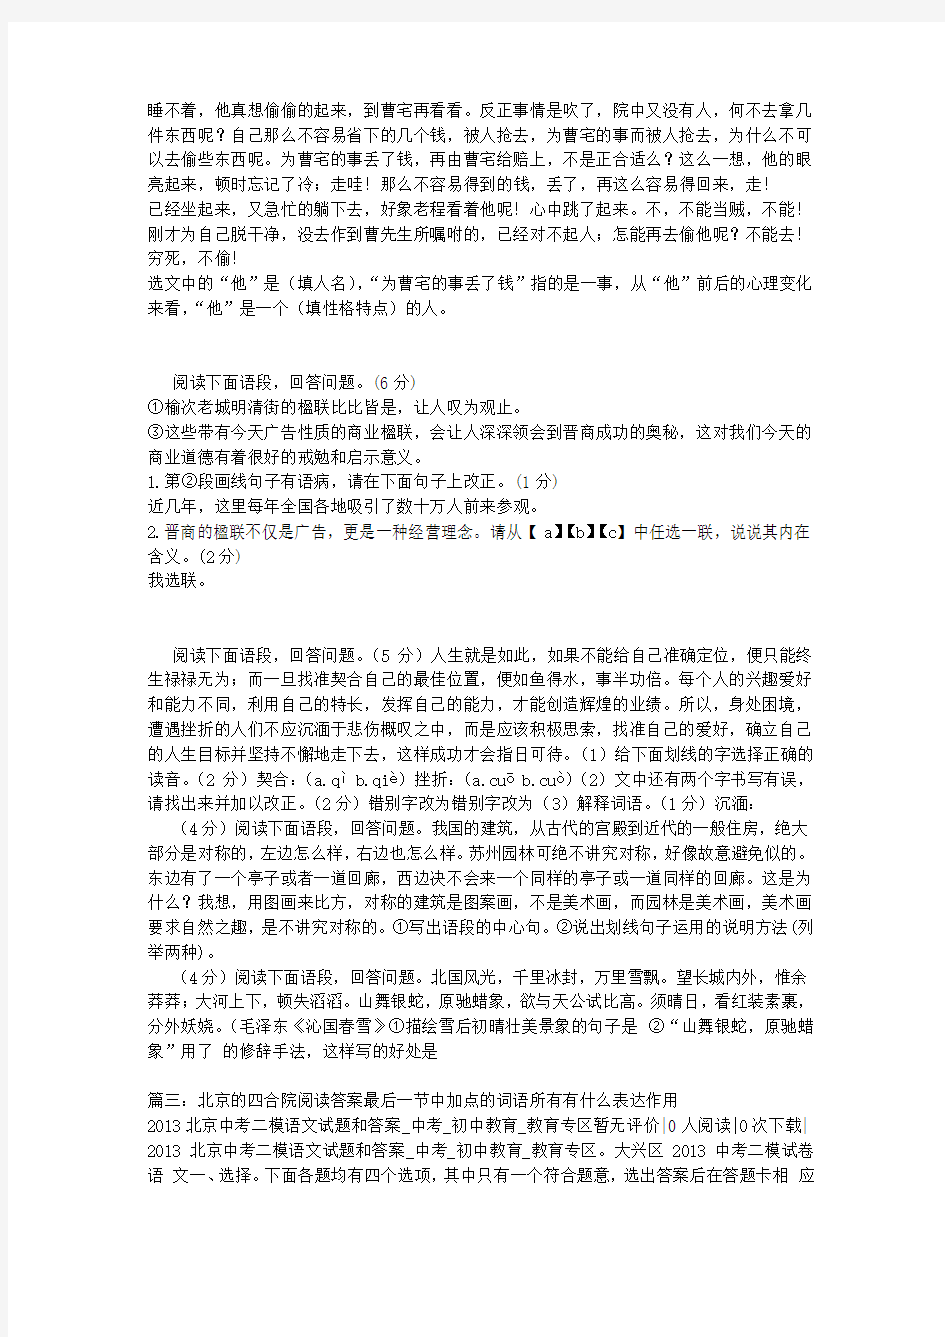 北京的四合院阅读答案最后一节中加点的词语所有有什么表达作用